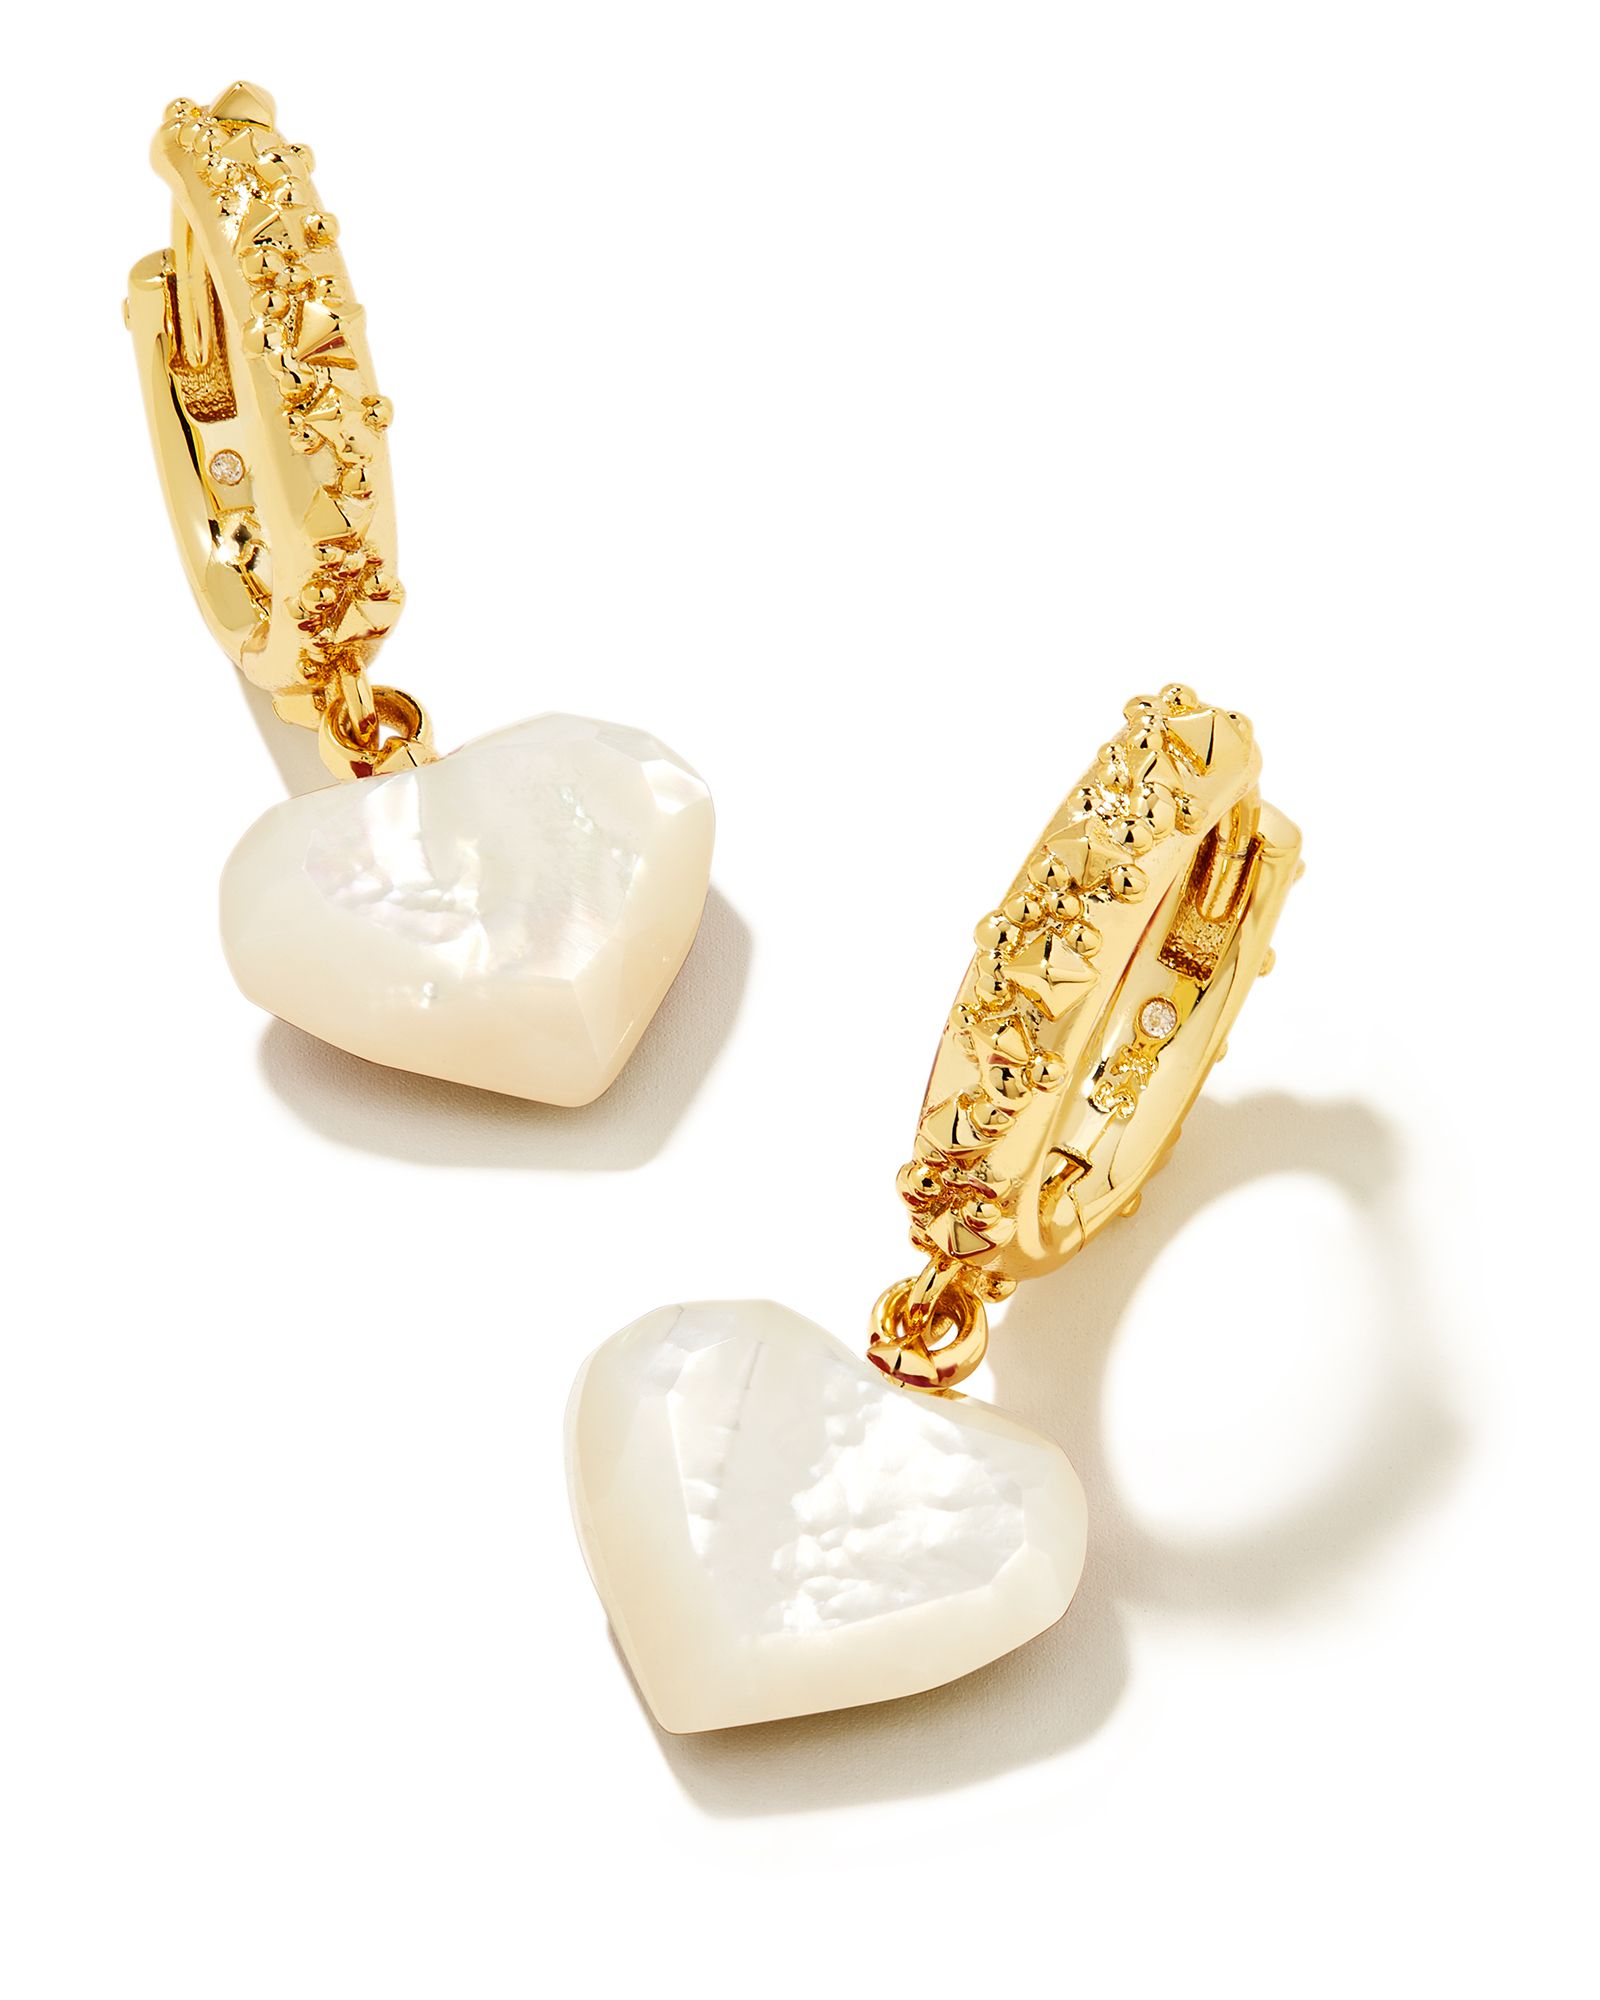 Penny Gold Heart Huggie Earrings in Ivory Mother-of-Pearl | Kendra Scott | Kendra Scott